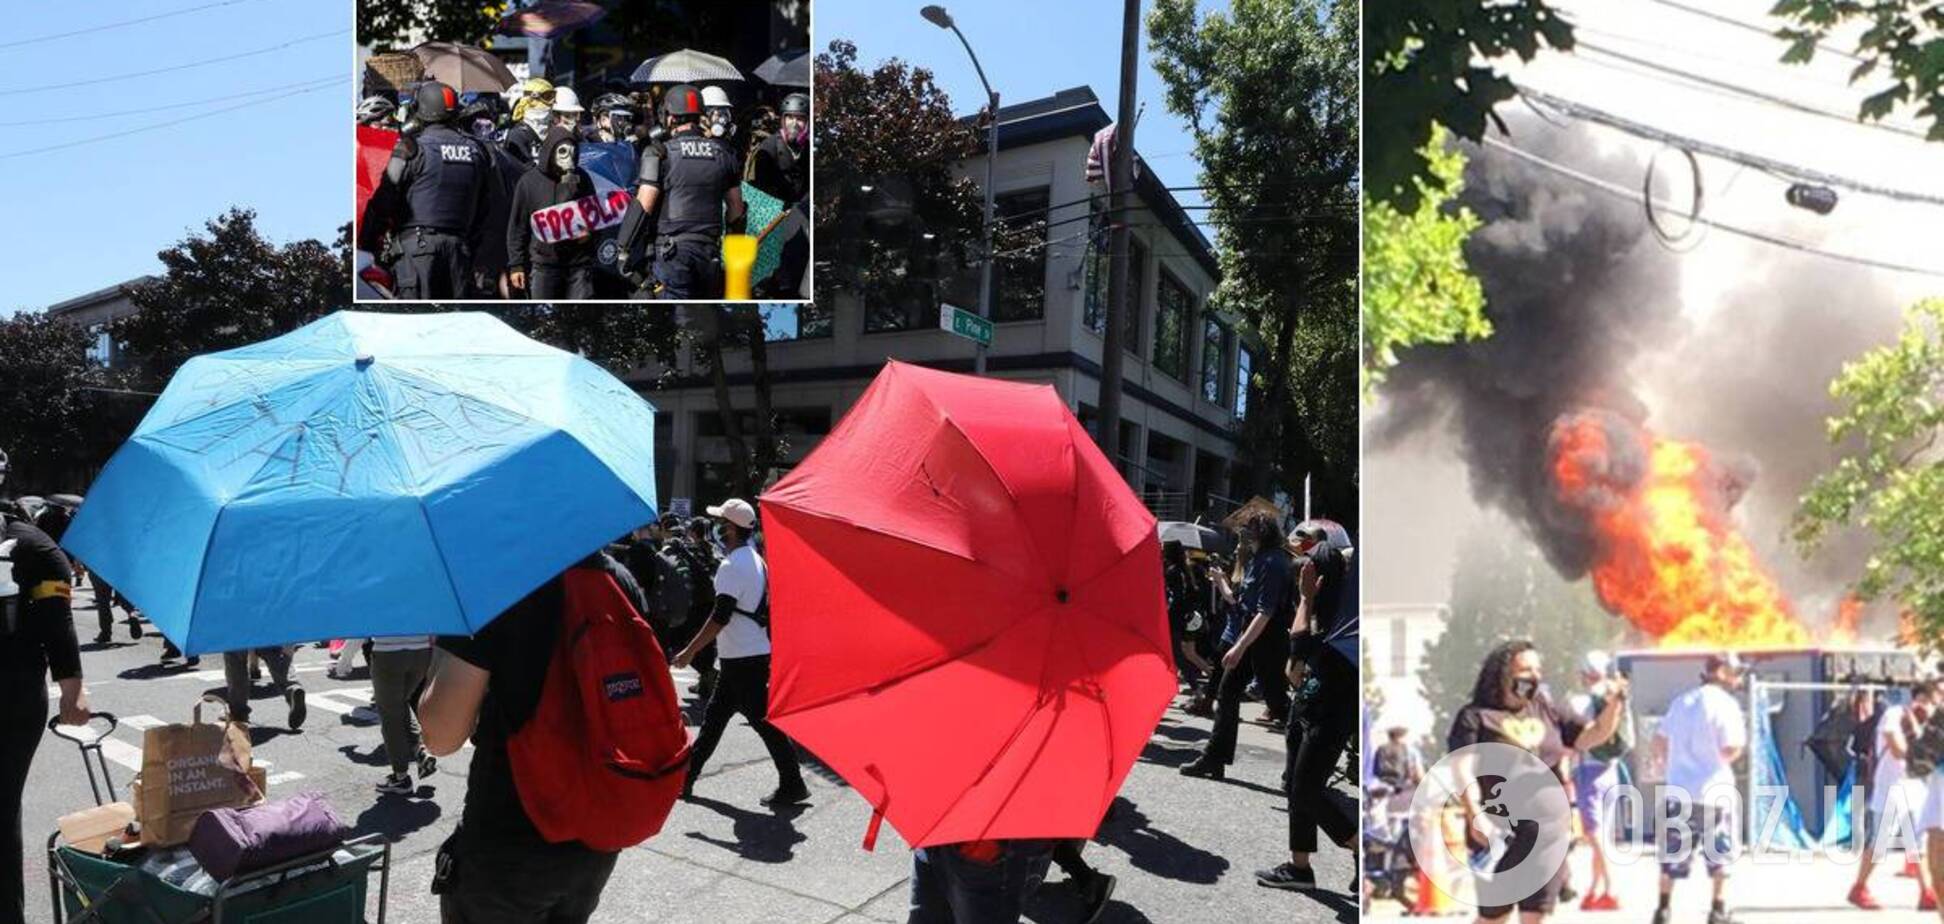 В Сиэтле полиция назвала акцию бунтом